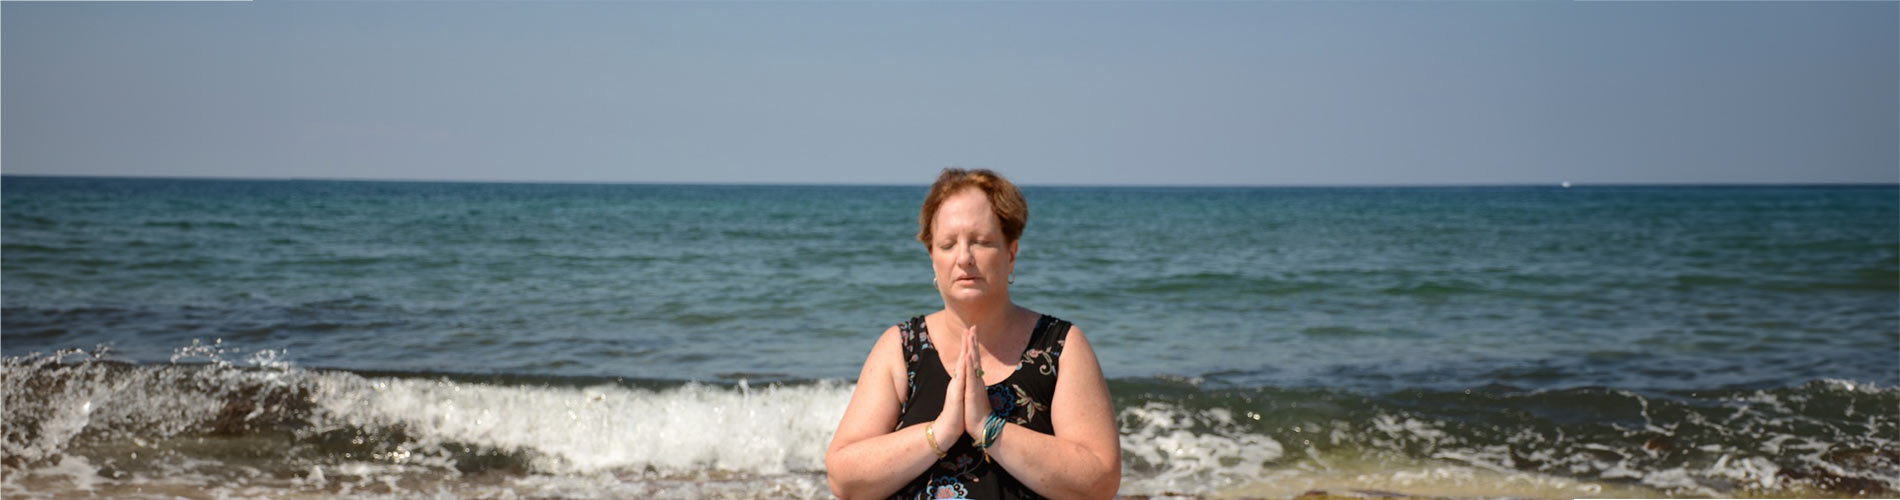 אישה יושבת על שפת הים ידיה צמודות לפני הגוף